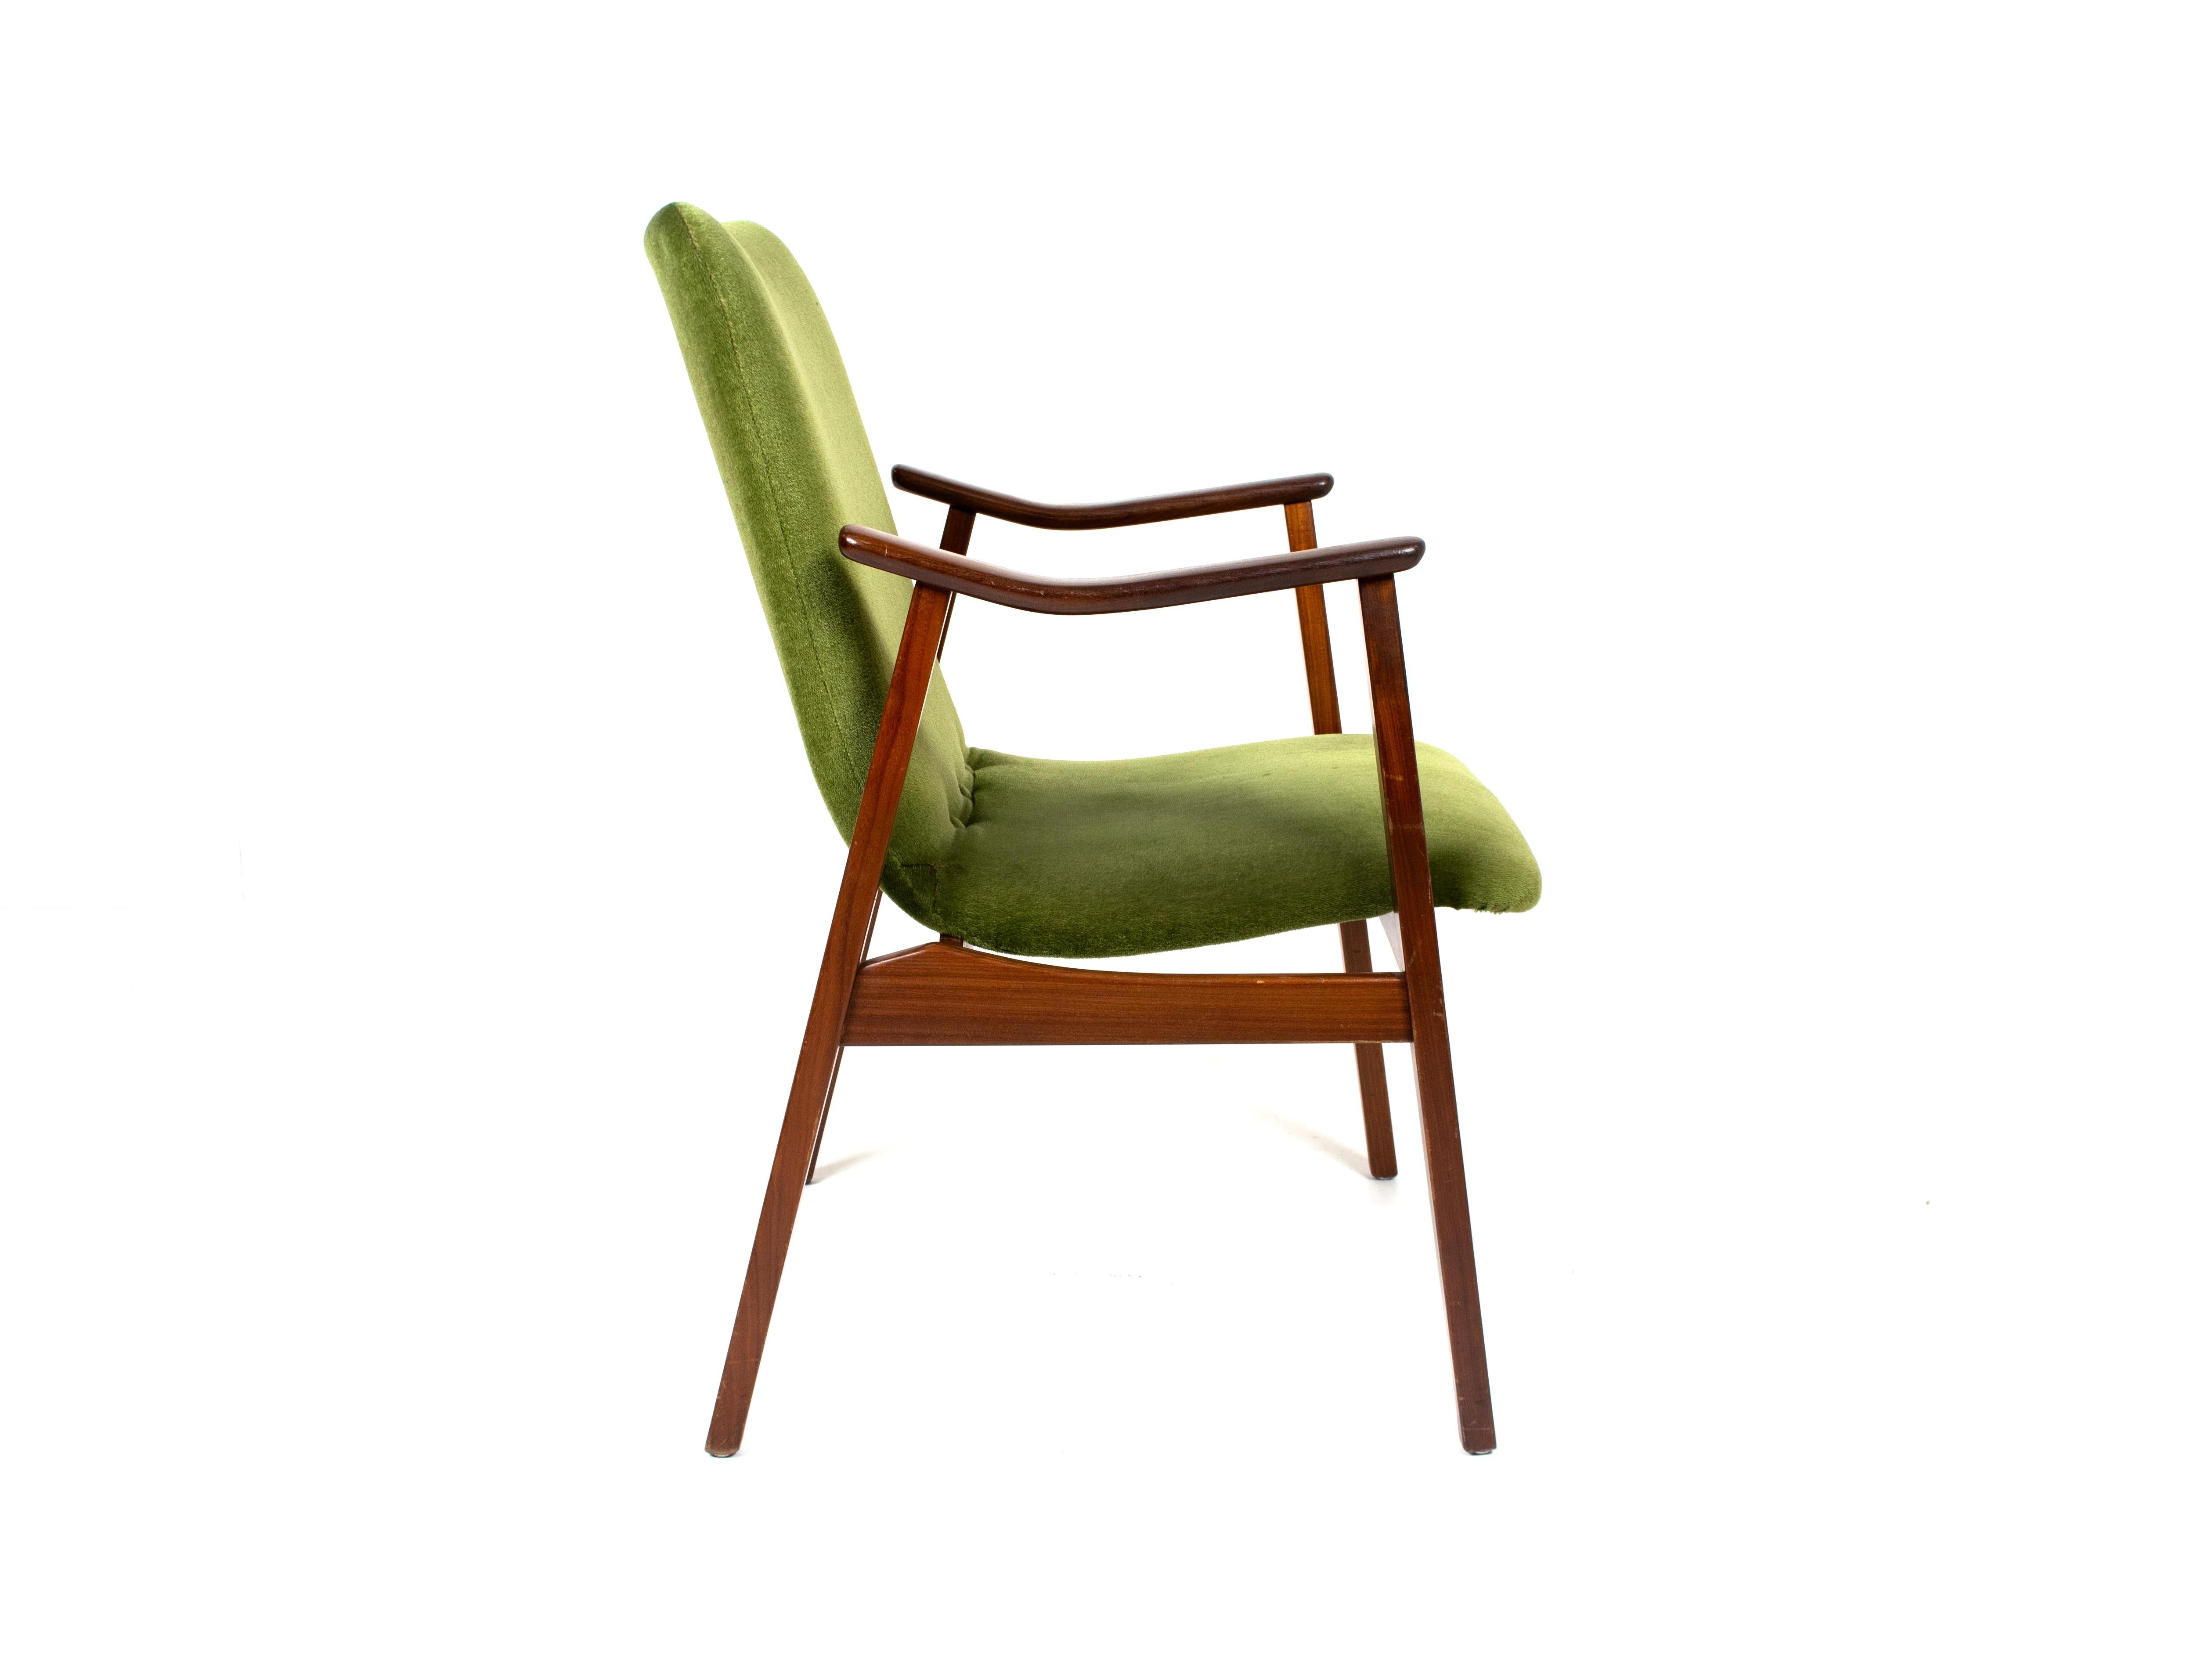 Dutch Vintage Lounge Chair in Teak and Green Velvet, Louis Van Teeffelen Style, 1960s